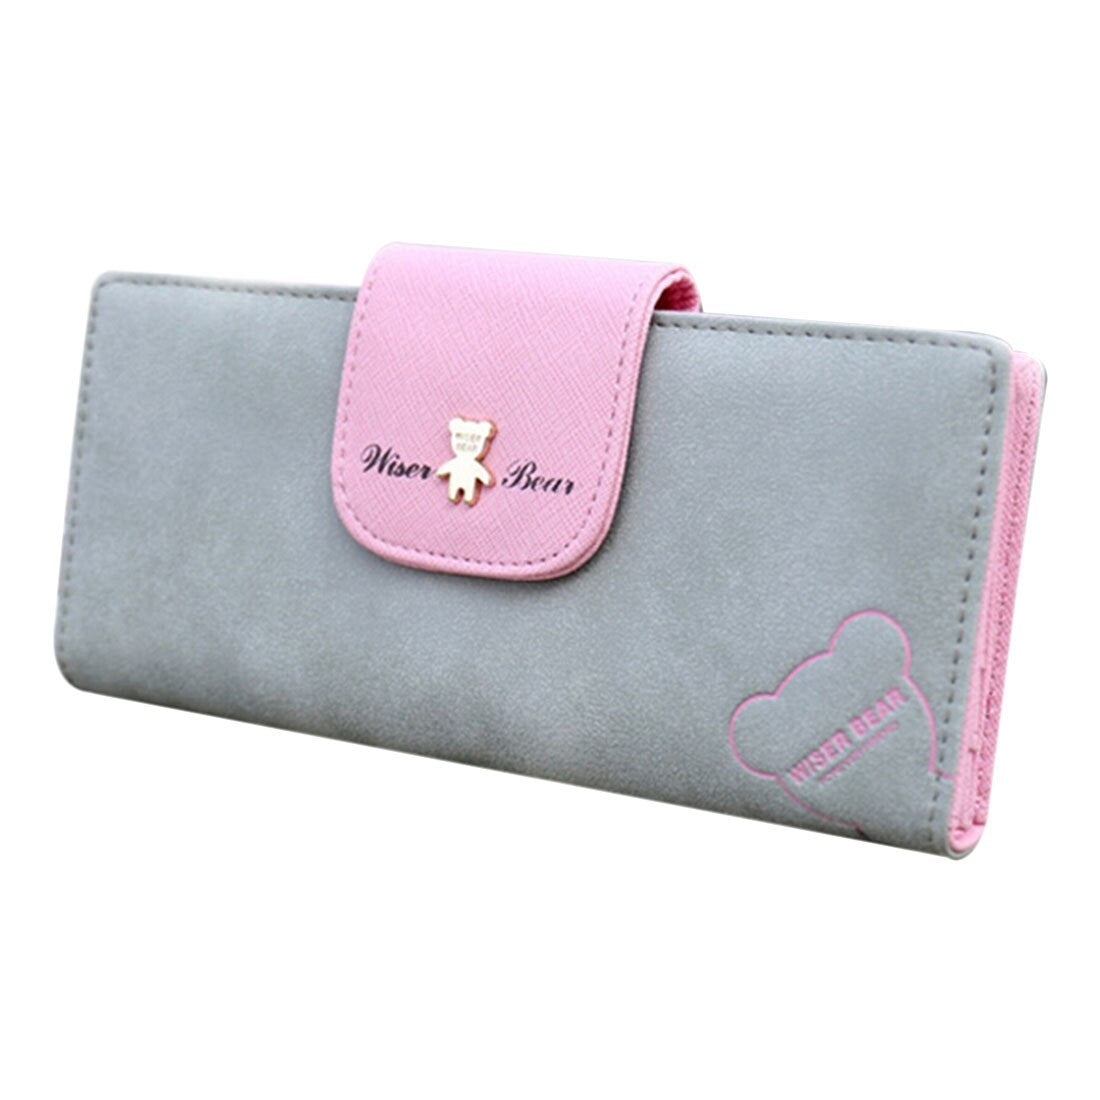 Hot NEW Cute Fashion Women Leather Wallet Button Clutch Purse Lady Long Handbag Bag Grey - ebowsos